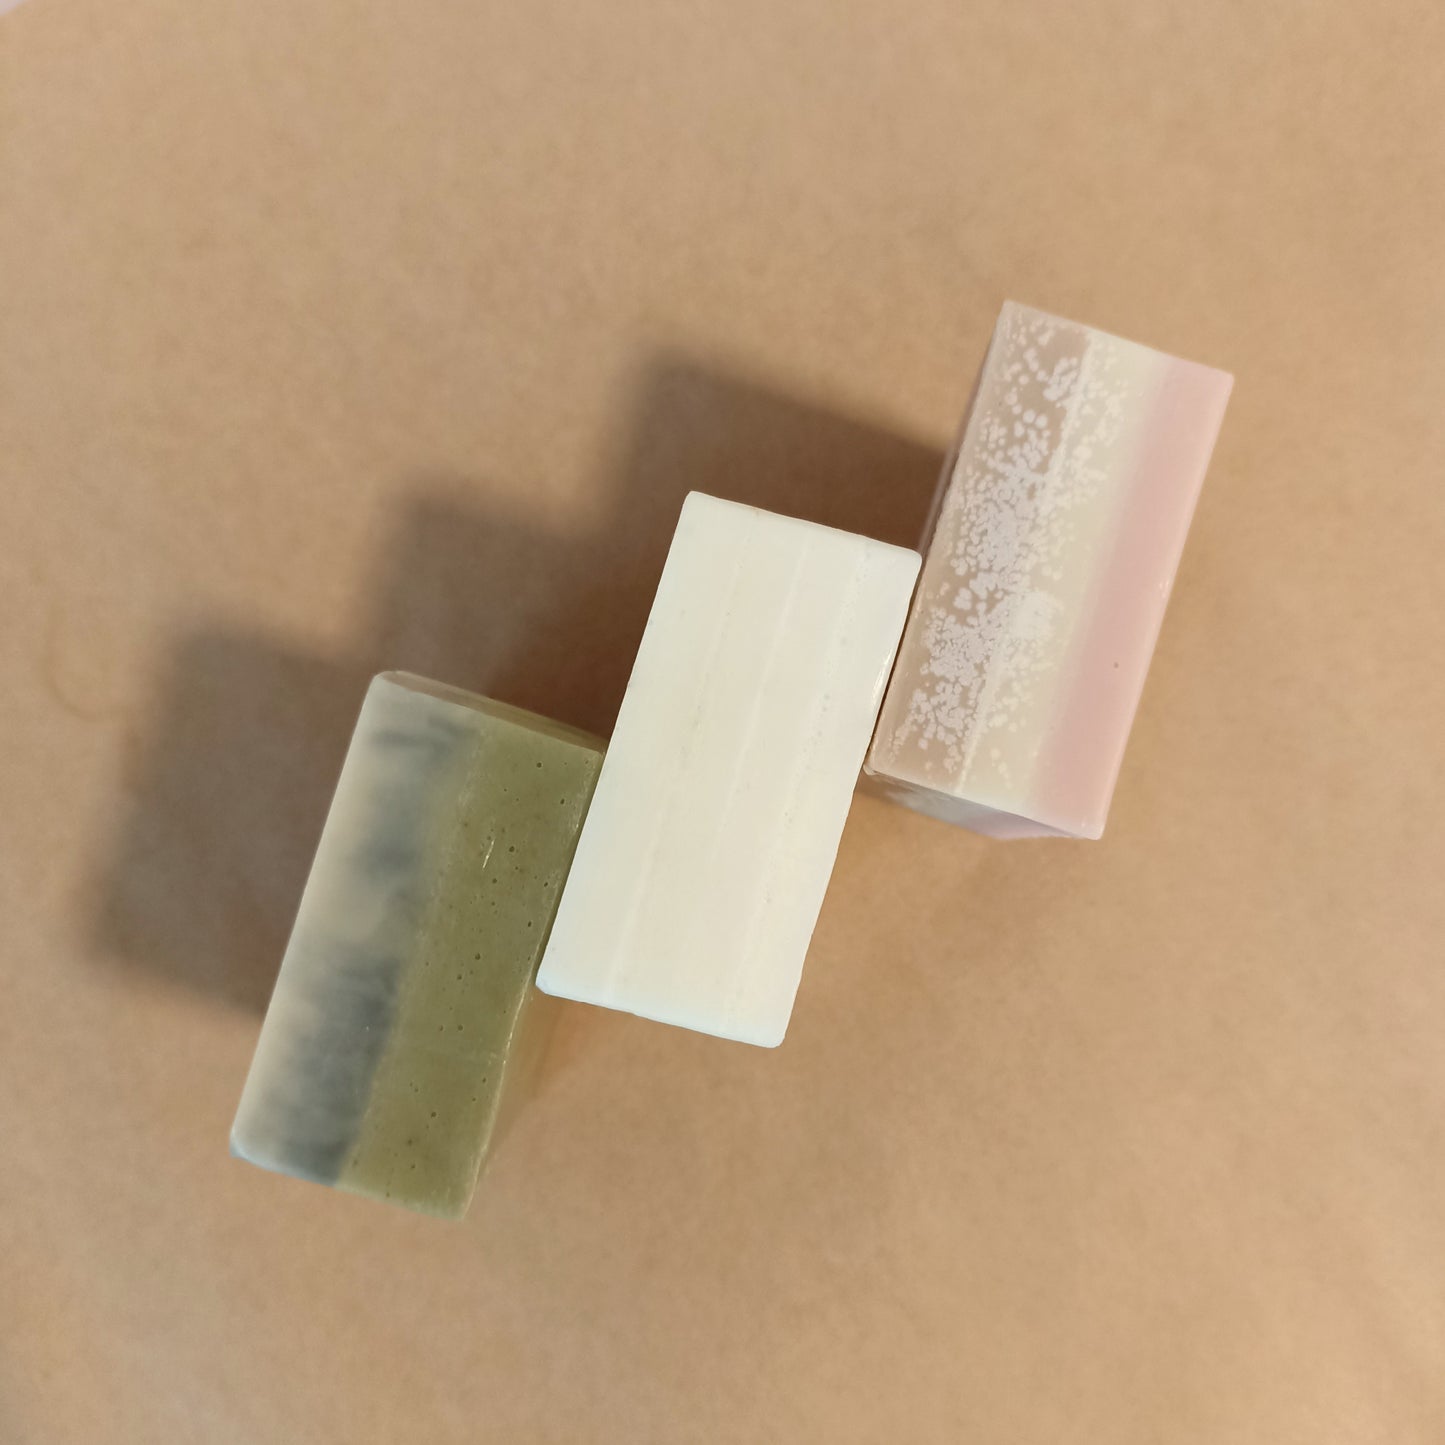 Bundle: Fragrance-free Sampler (3 Travel/Sample Soaps)